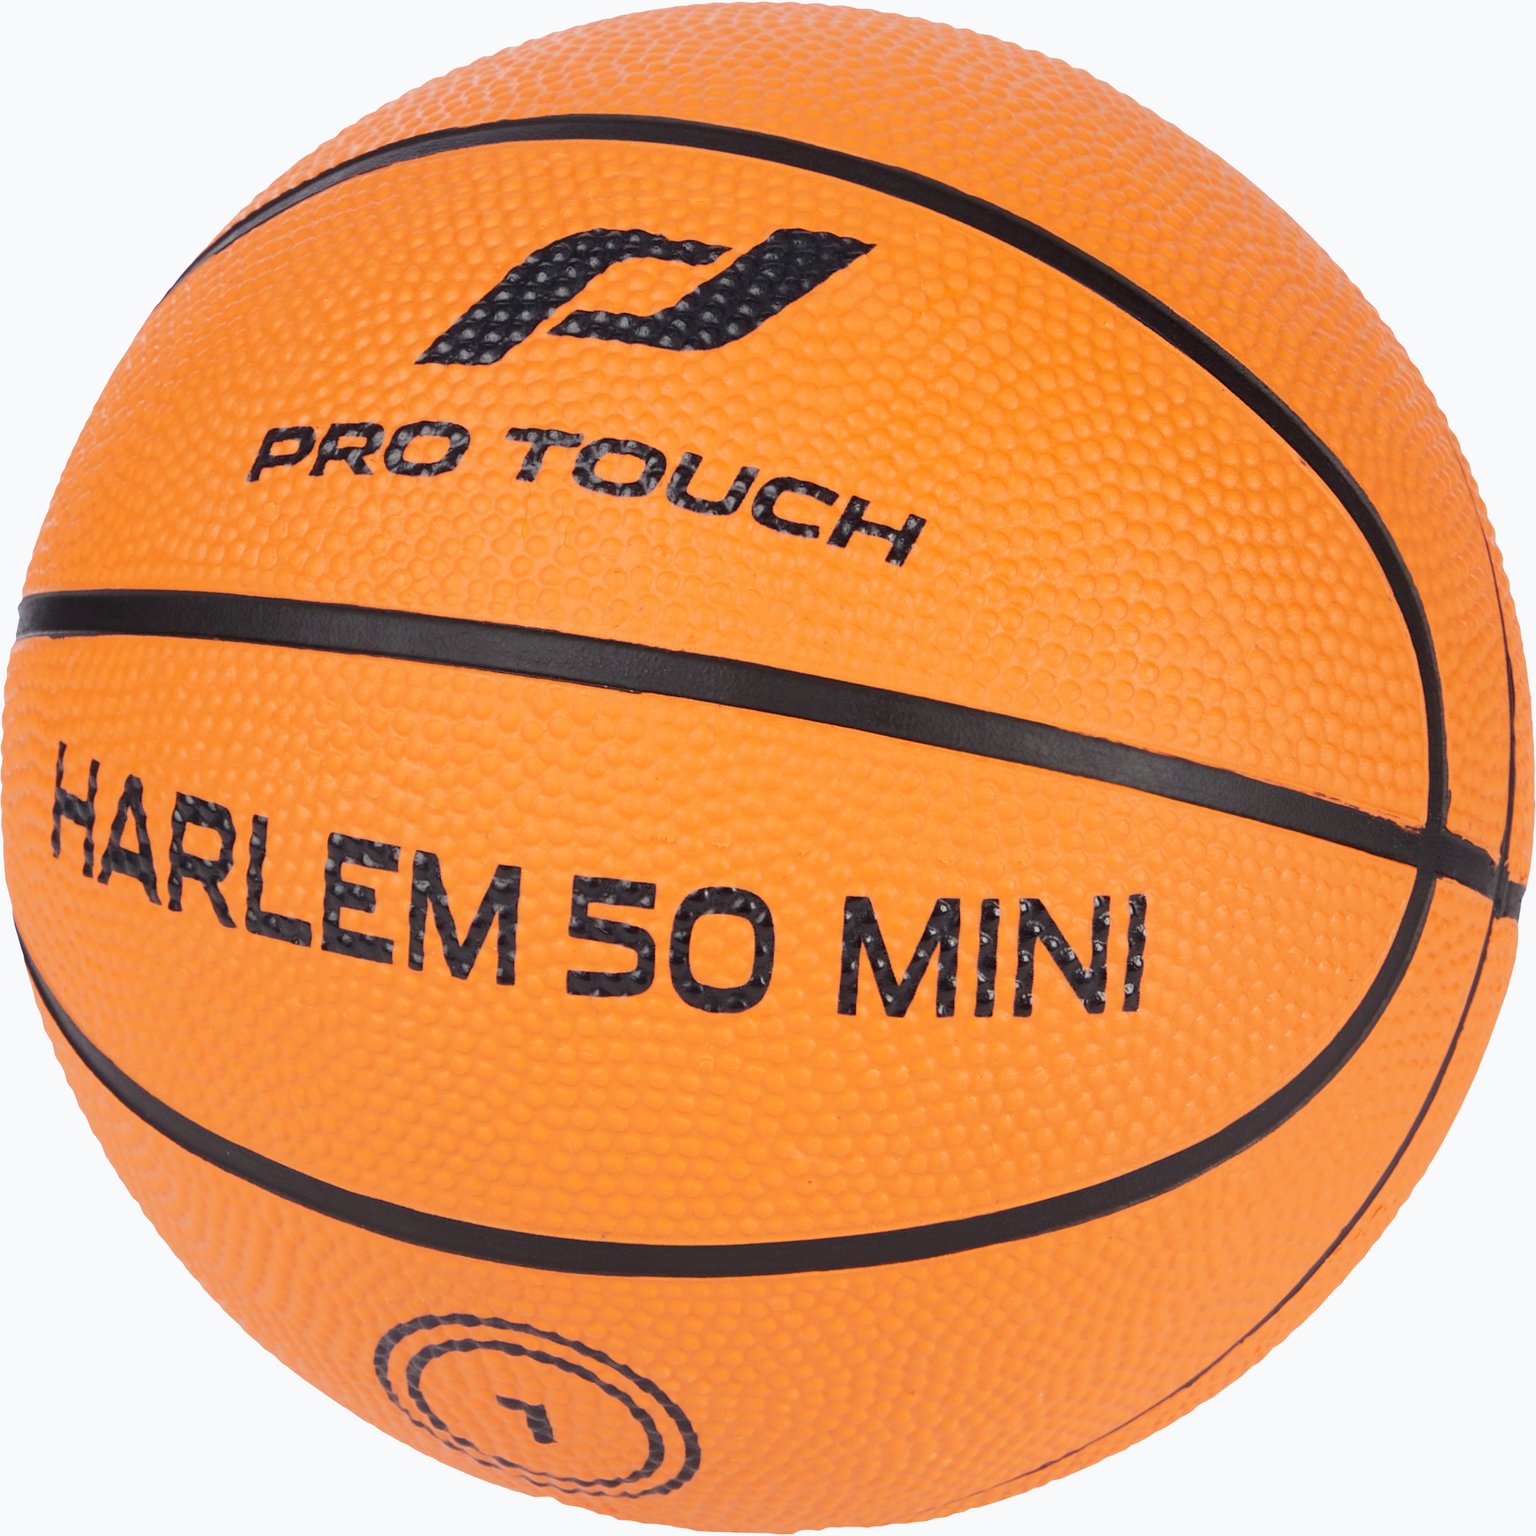 Harlem 50 Mini basketboll